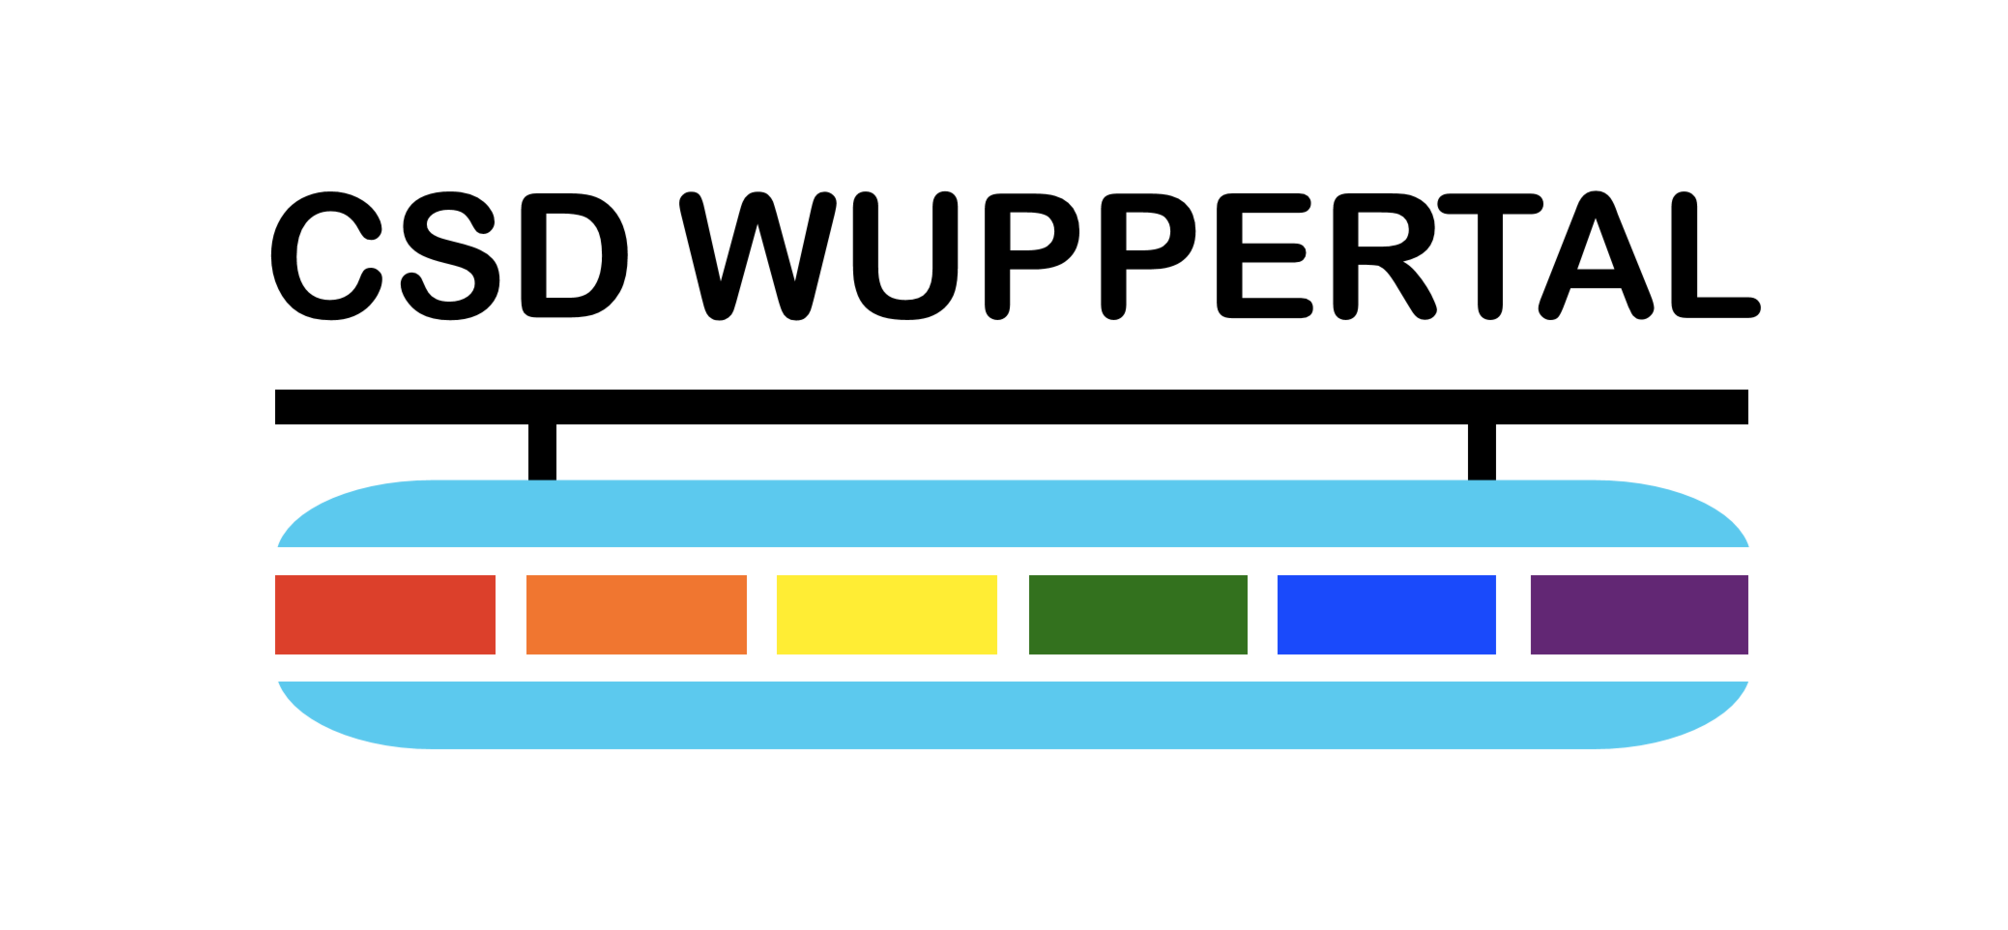 Grafik: Schwebebahn mit Regenbogenfarben